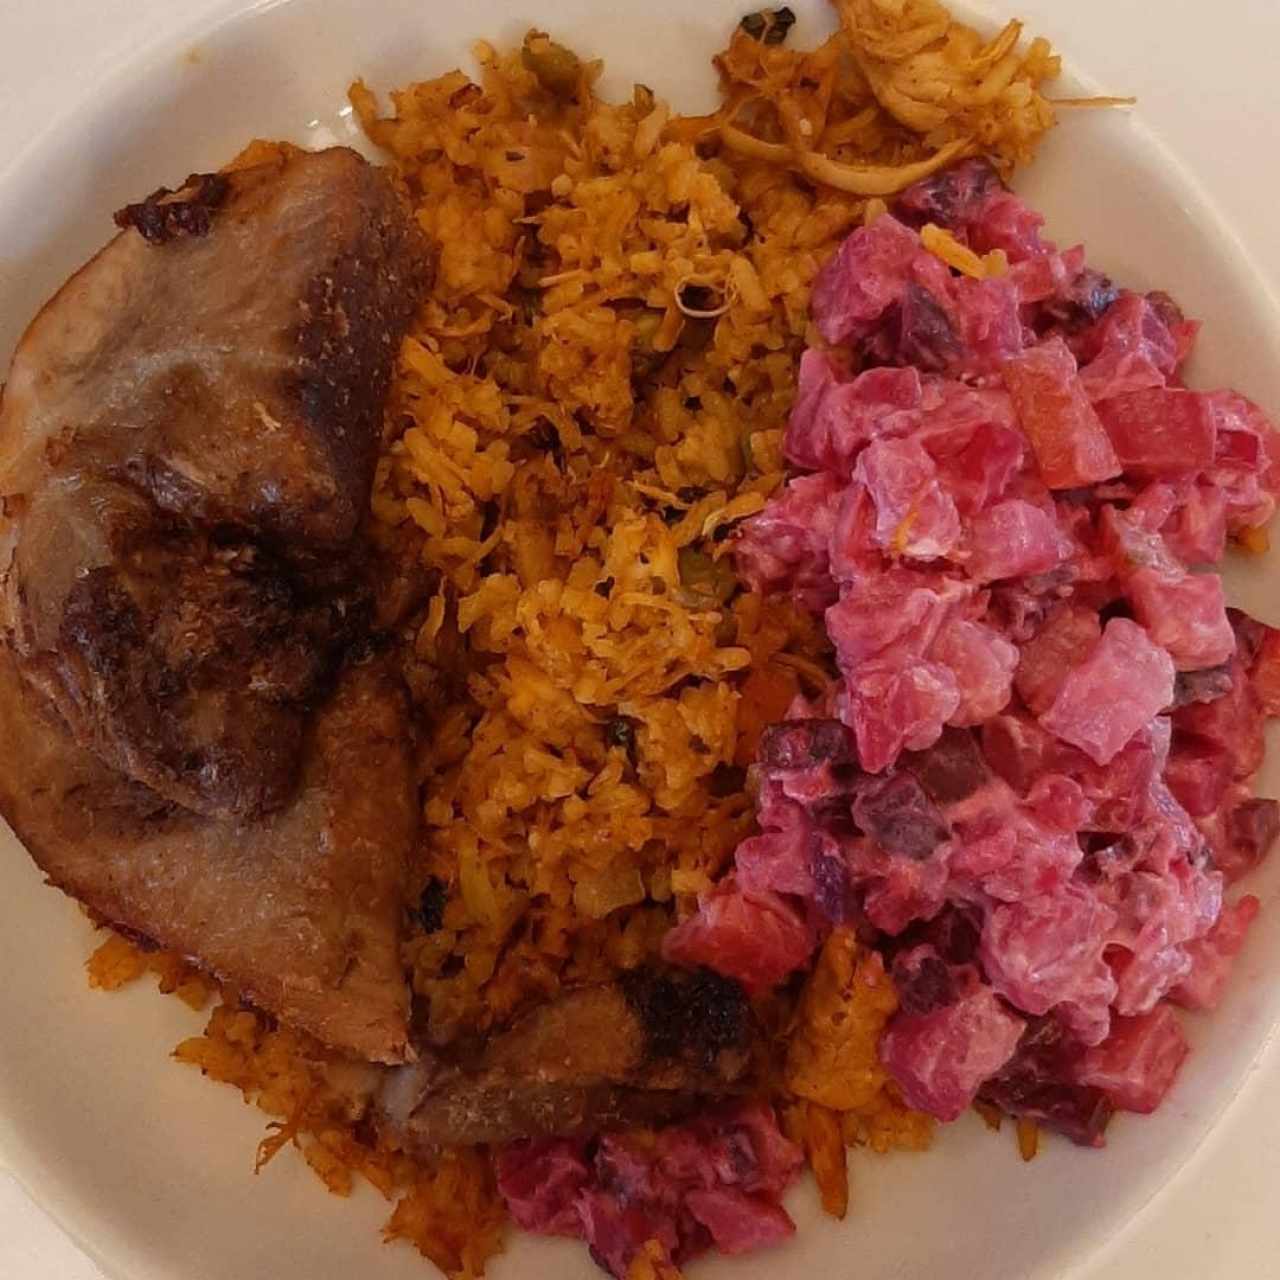 arroz con pollo, lechona y ensalada de feria 